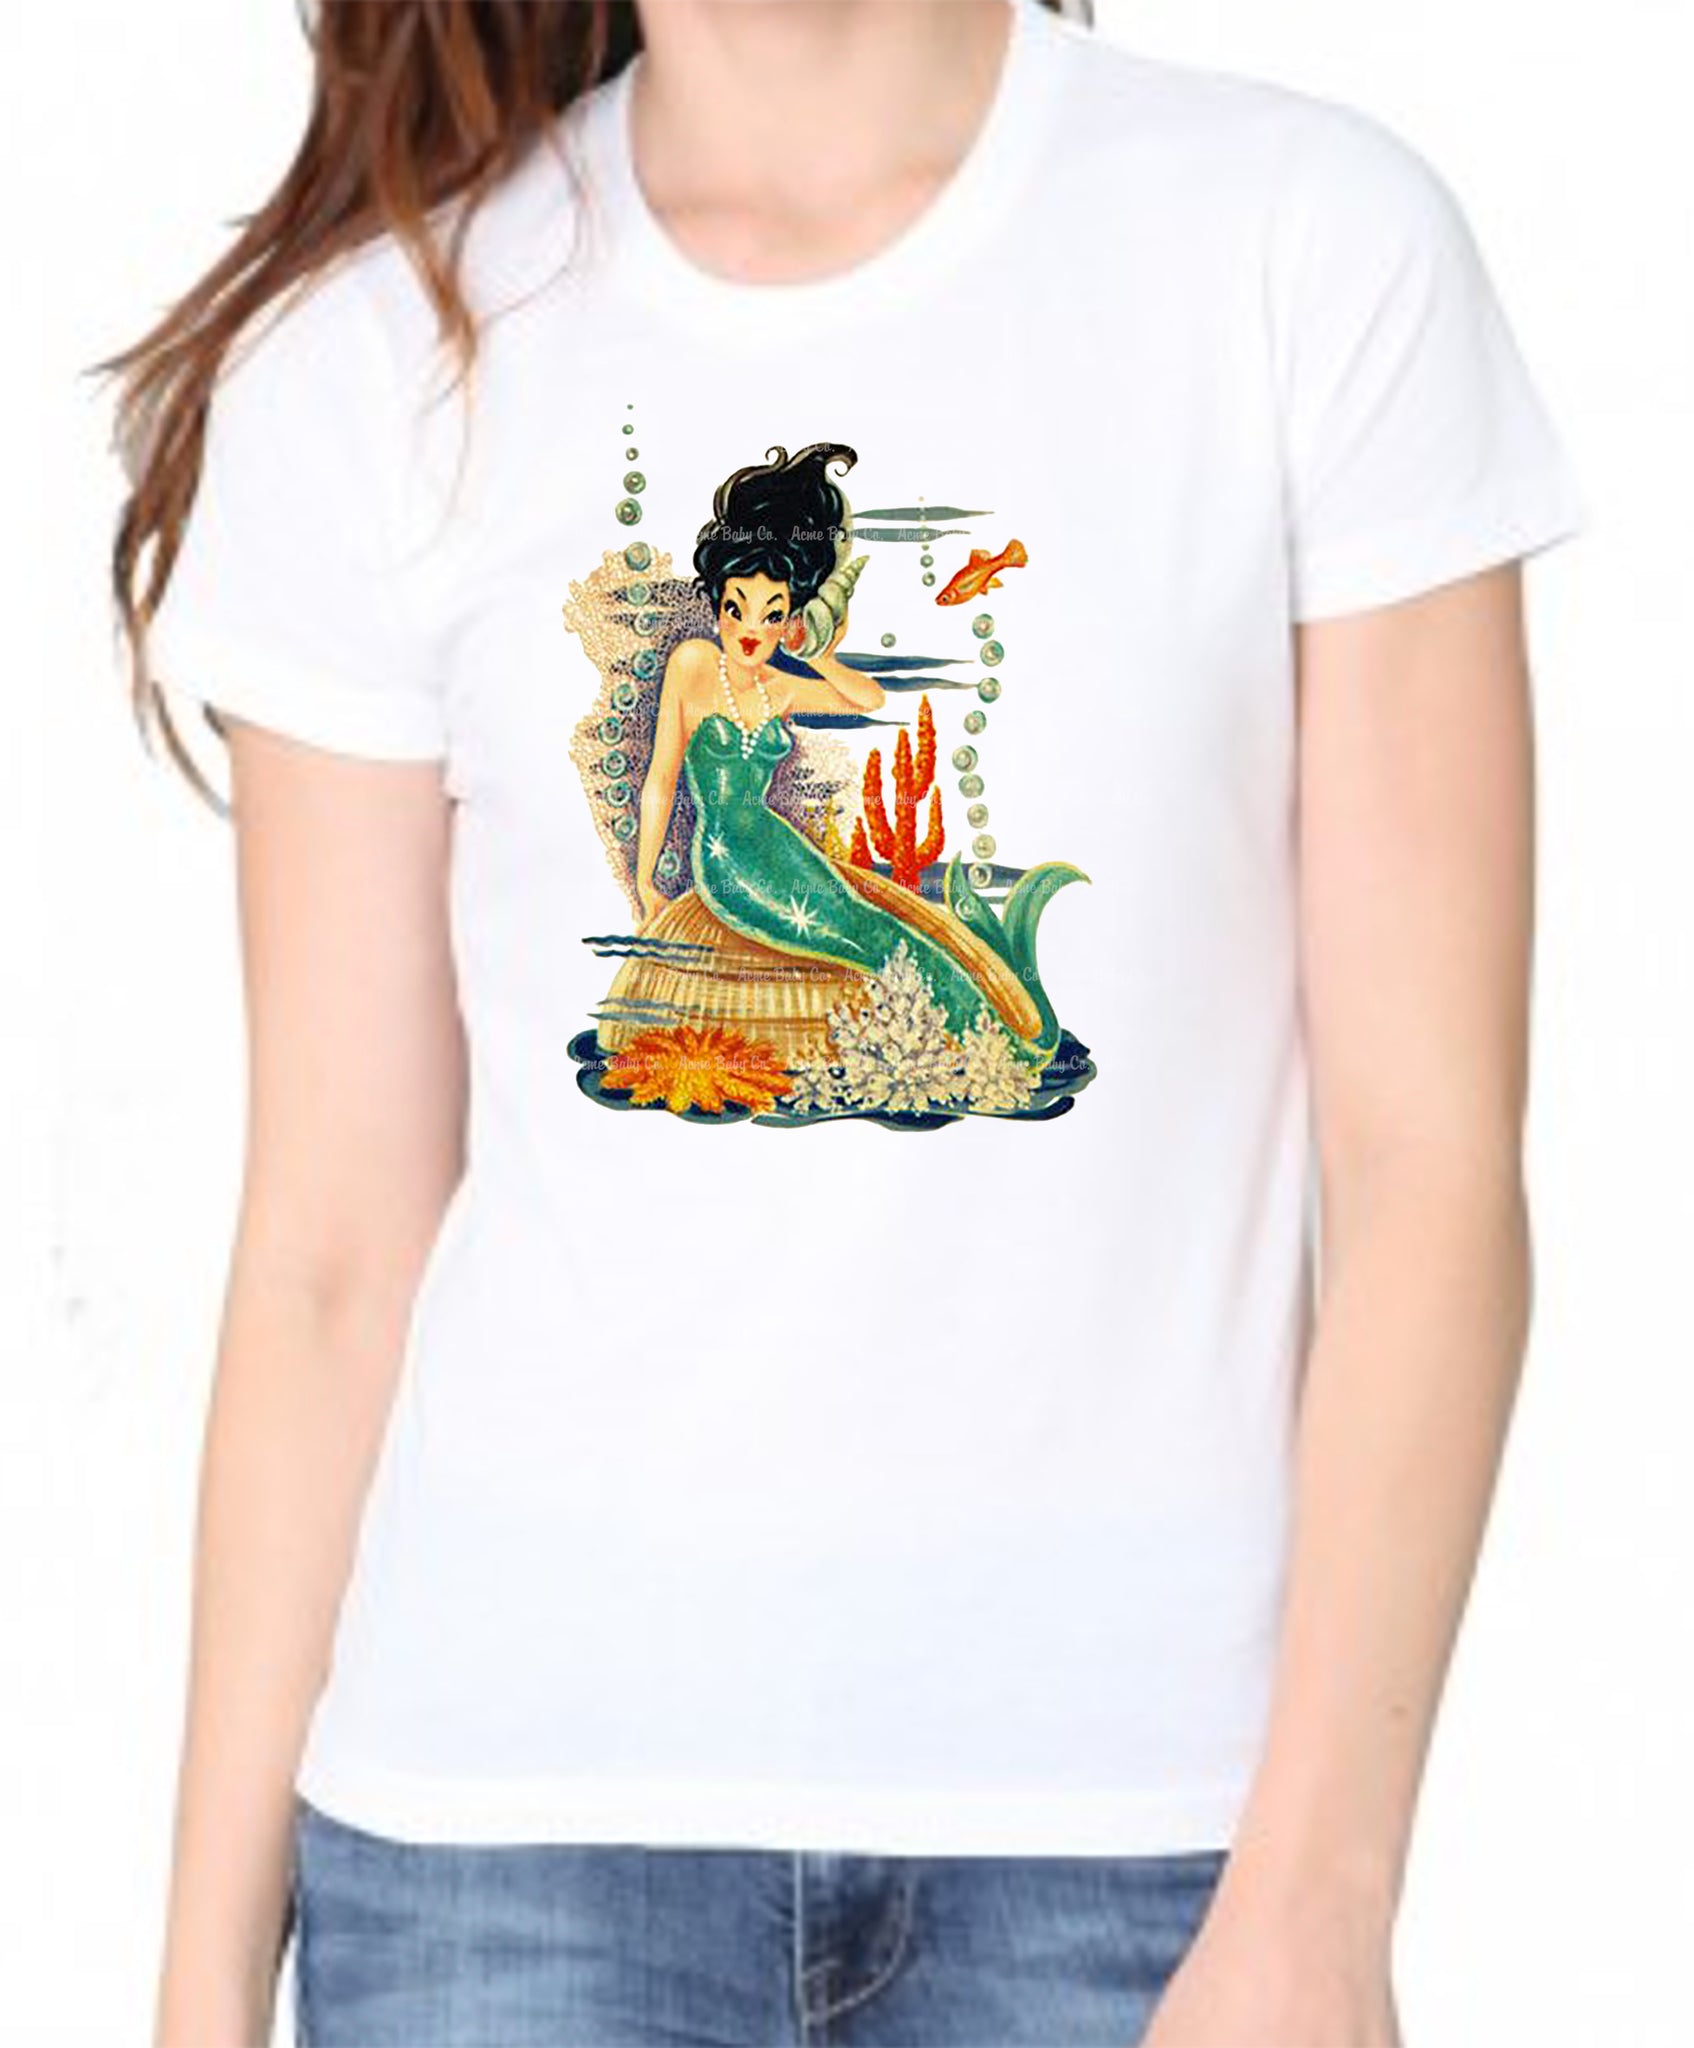 Raven Haired Mermaid Women's Organic Shirt